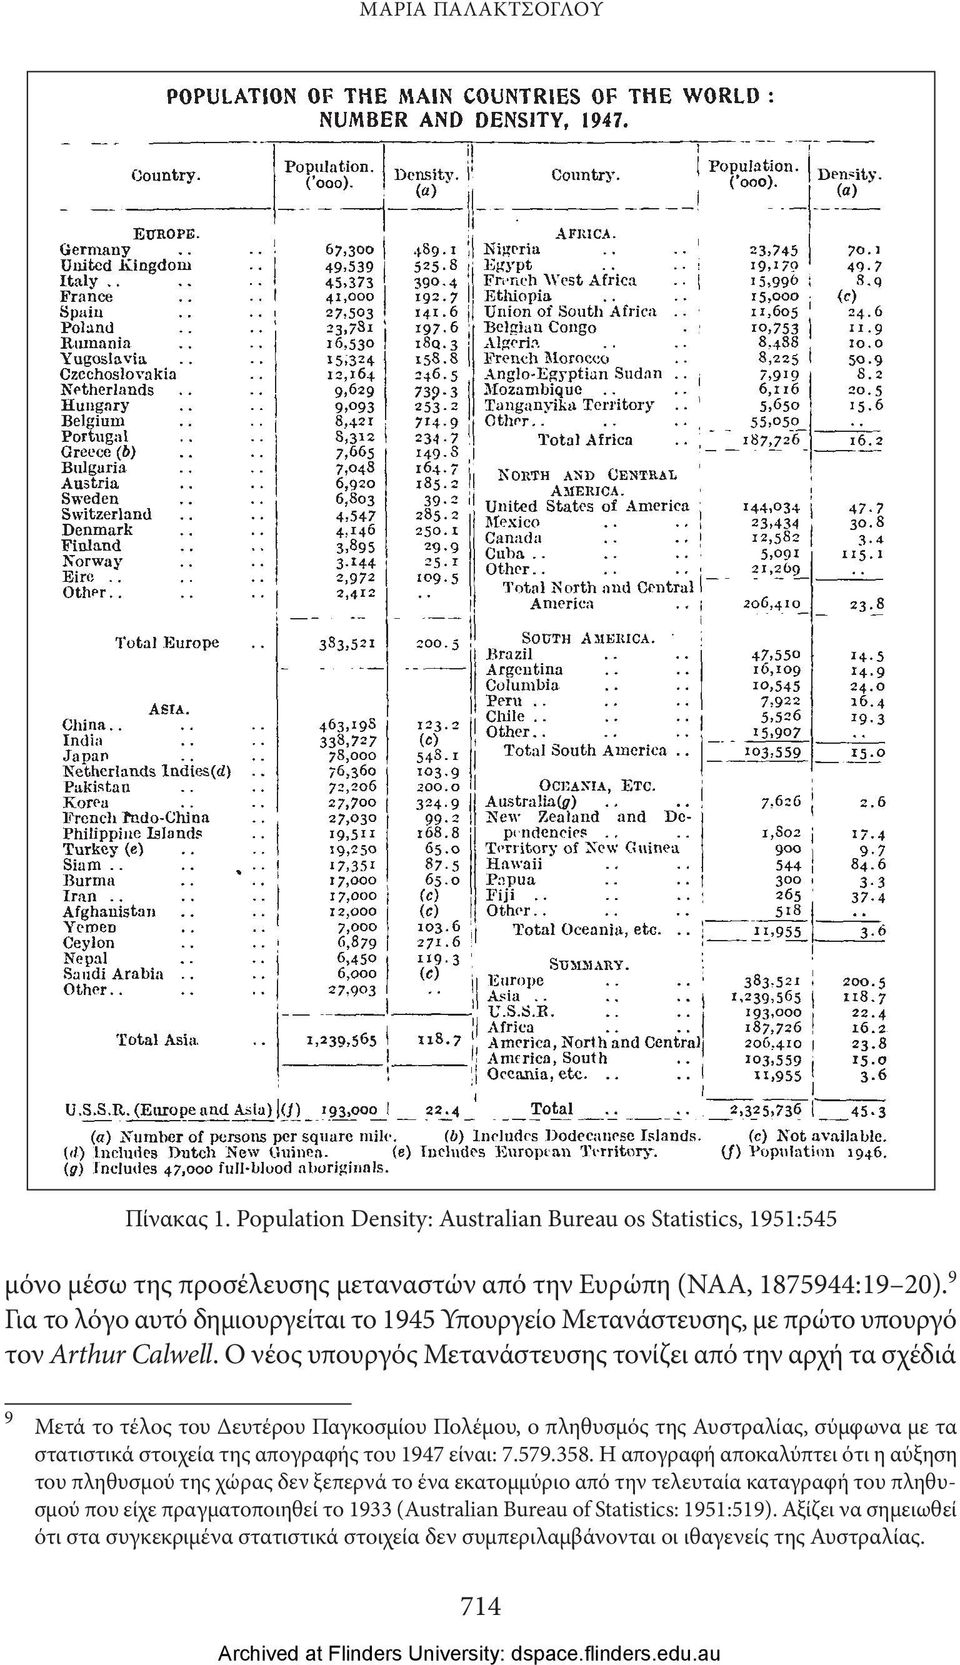 Ο νέος υπουργός Μετανάστευσης τονίζει από την αρχή τα σχέδιά 9 Μετά το τέλος του Δευτέρου Παγκοσμίου Πολέμου, ο πληθυσμός της Αυστραλίας, σύμφωνα με τα στατιστικά στοιχεία της απογραφής του 1947